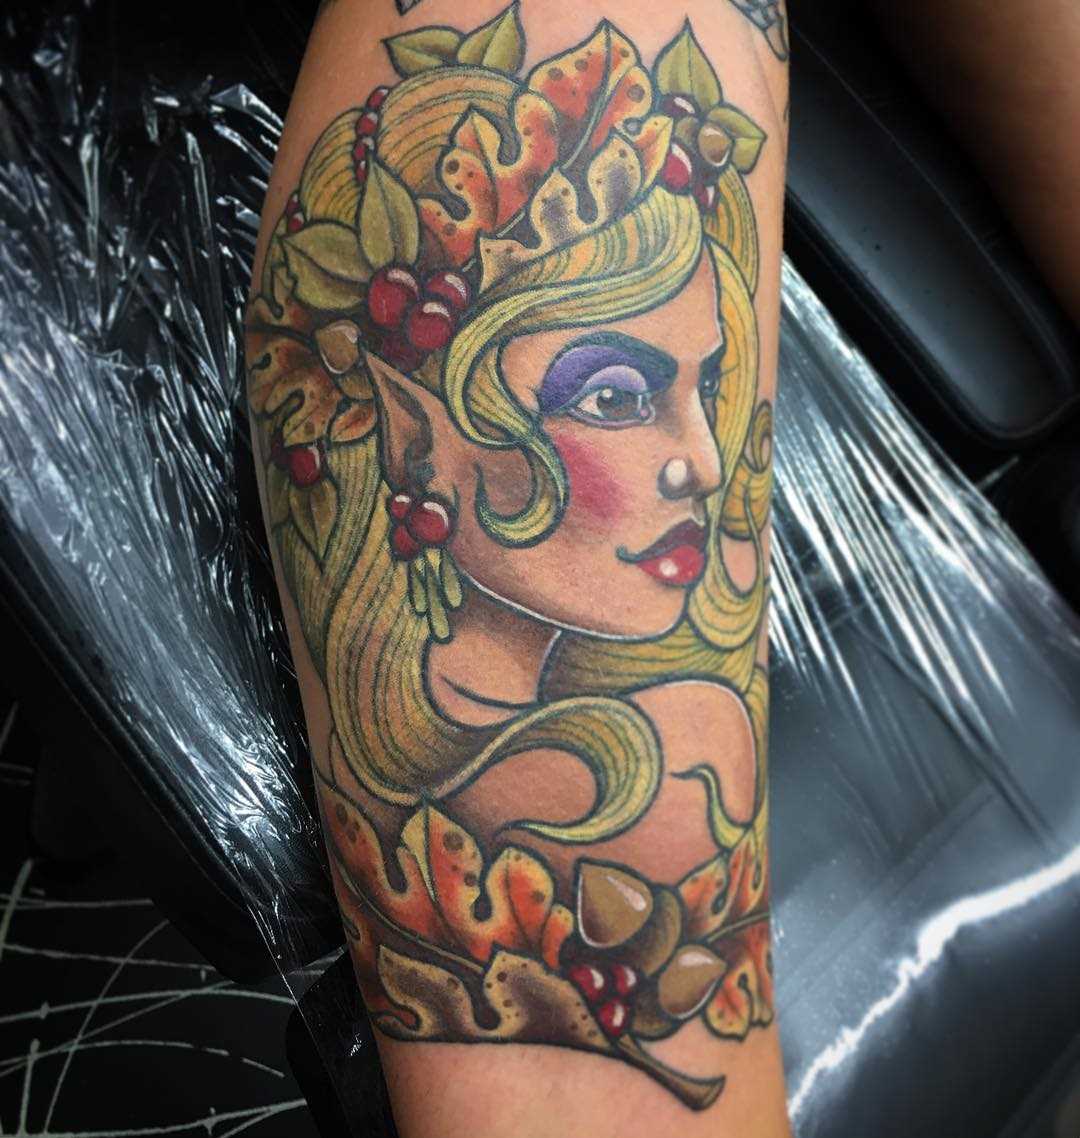 A tatuagem de uma menina elfo sobre a perna da mulher